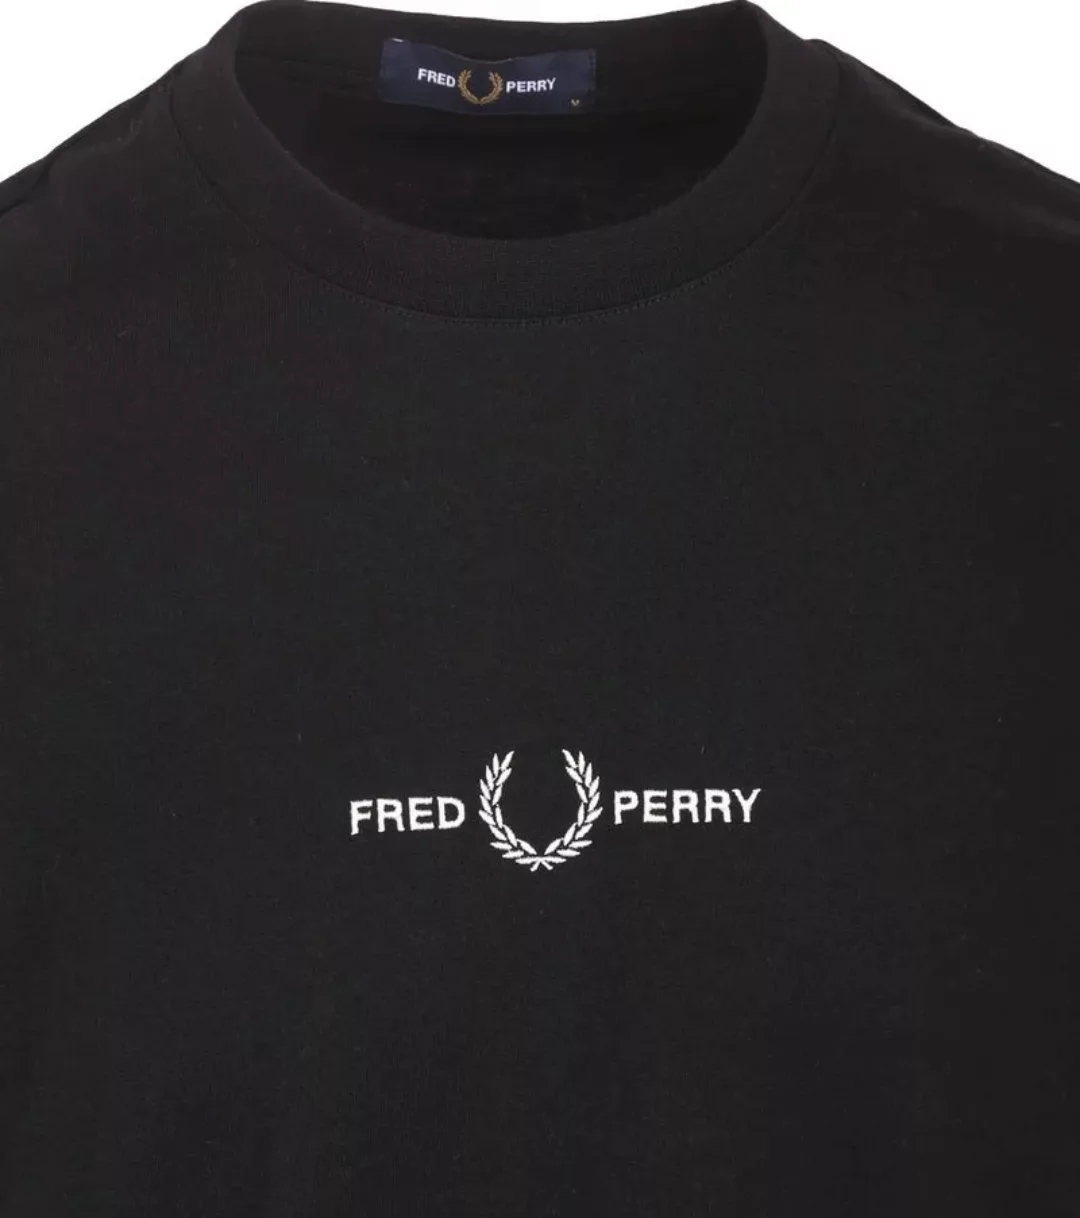 Fred Perry T-Shirt M4580 Schwarz - Größe L günstig online kaufen